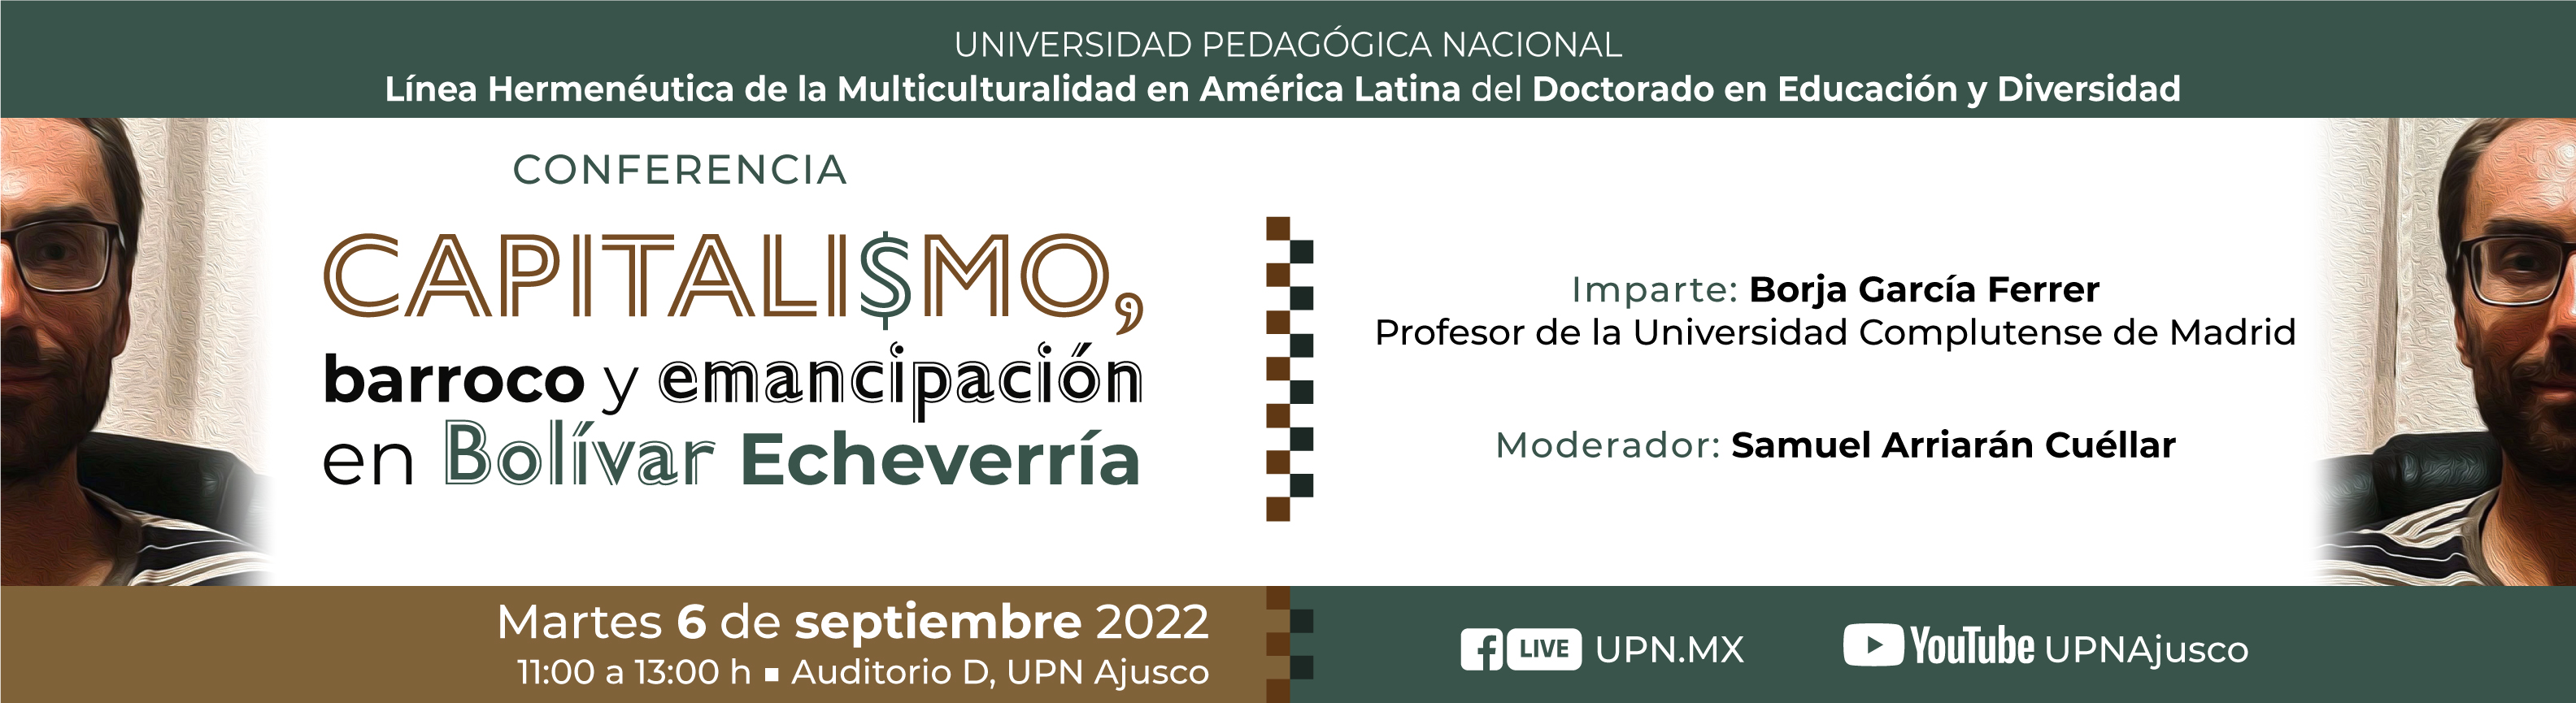 Conferencia: “Capitalismo, barroco y emancipación en Bolívar Echeverría" Dr. Borja García Ferrer